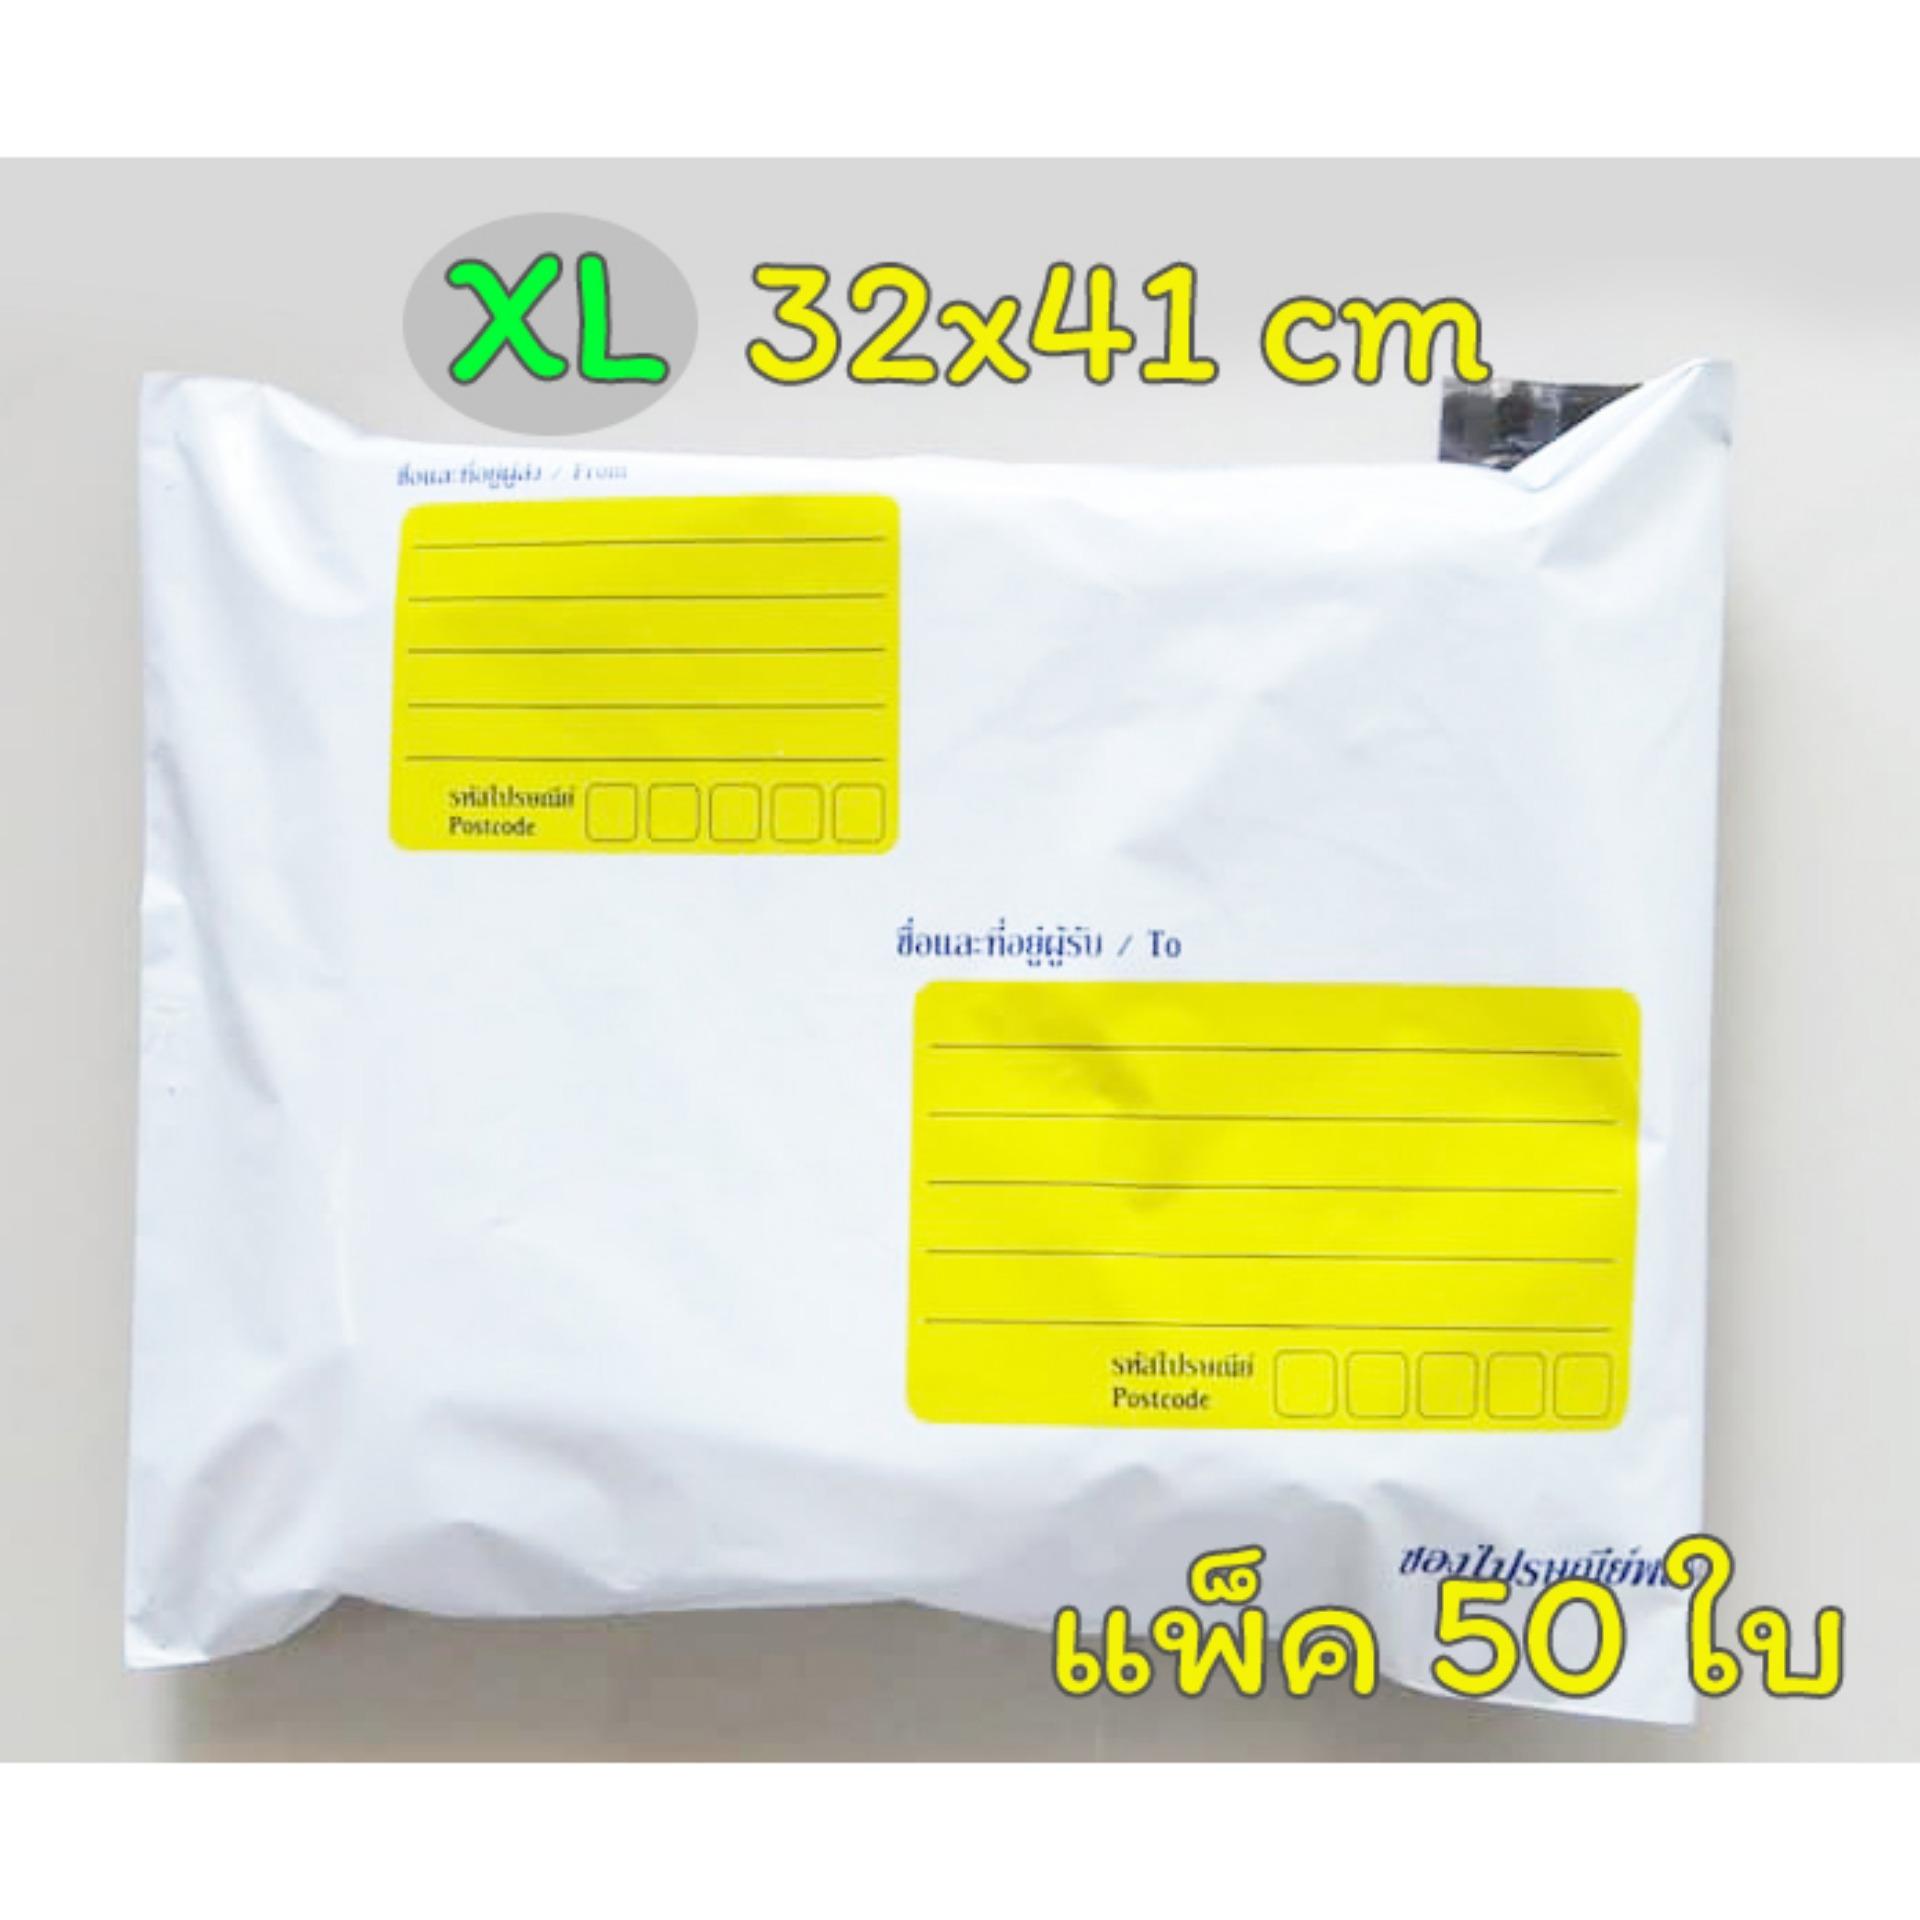 ซองส่งไปรษณีย์ มีจ่าหน้า พิมพ์จ่าหน้า ซองพลาสติก ซองไปรษณีย์ ซองไปรษณีย์พลาสติก ถุงส่งของ สีขาว ขนาด 32x41 cm (แพ็ค 50 ใบ)